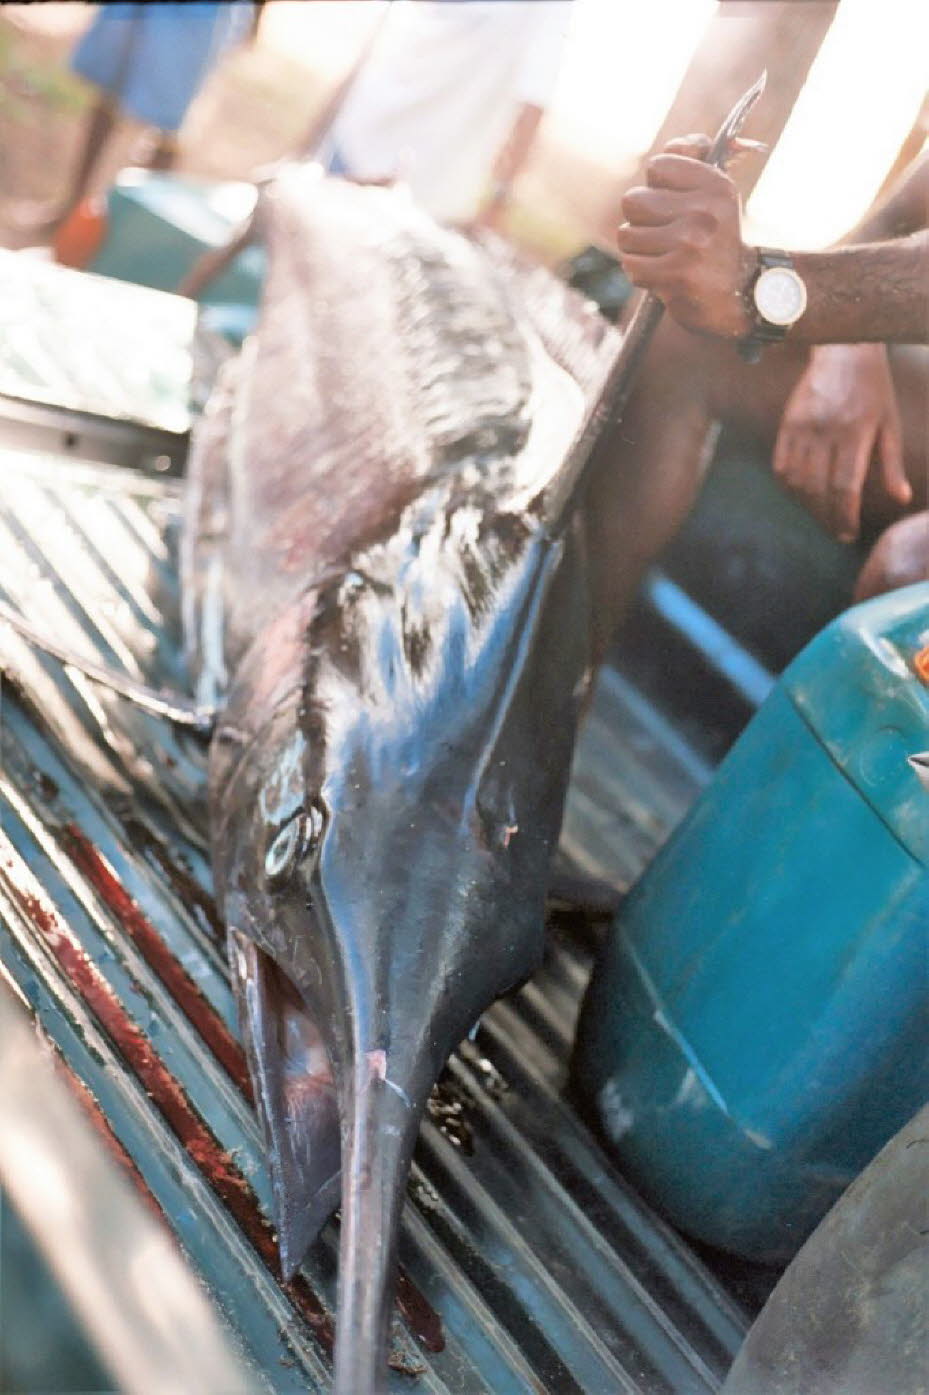 Ein Blauer Marlin wird auf einen Pickup verladen - Erhaltung: Der Blaue Marlin steht unter starkem Druck der Langleinenfischerei. Allein in der Karibik fangen japanische und kubanische Fischer jährlich über tausend Tonnen. Der Blaue Marlin wird von der In